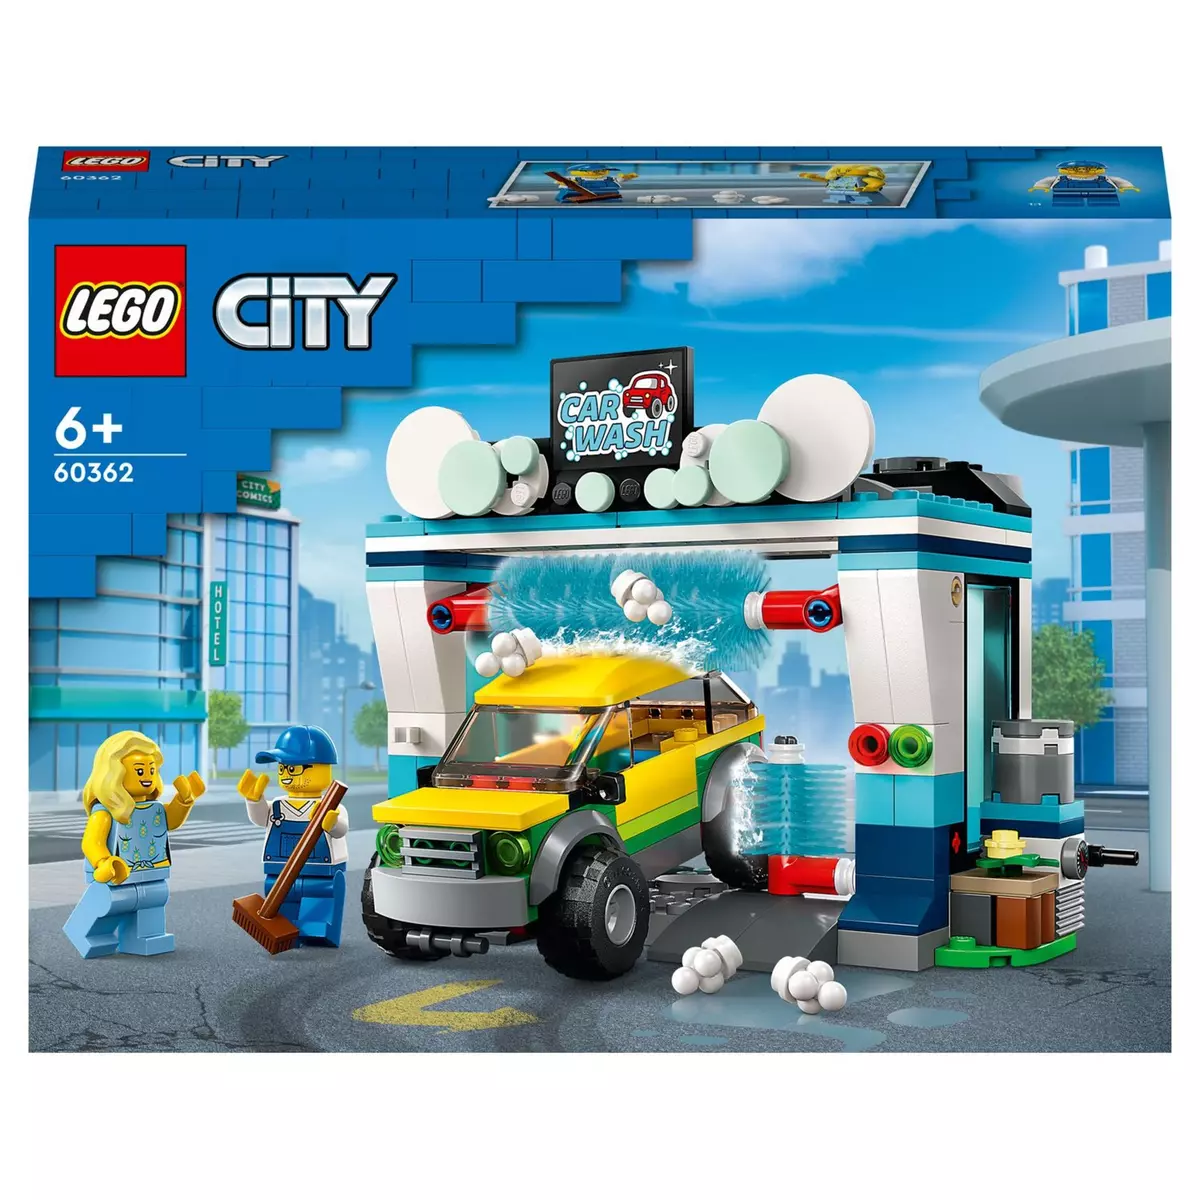 Lego 60389 City - Le garage pour voitures sur mesure - Maitre des Jeux